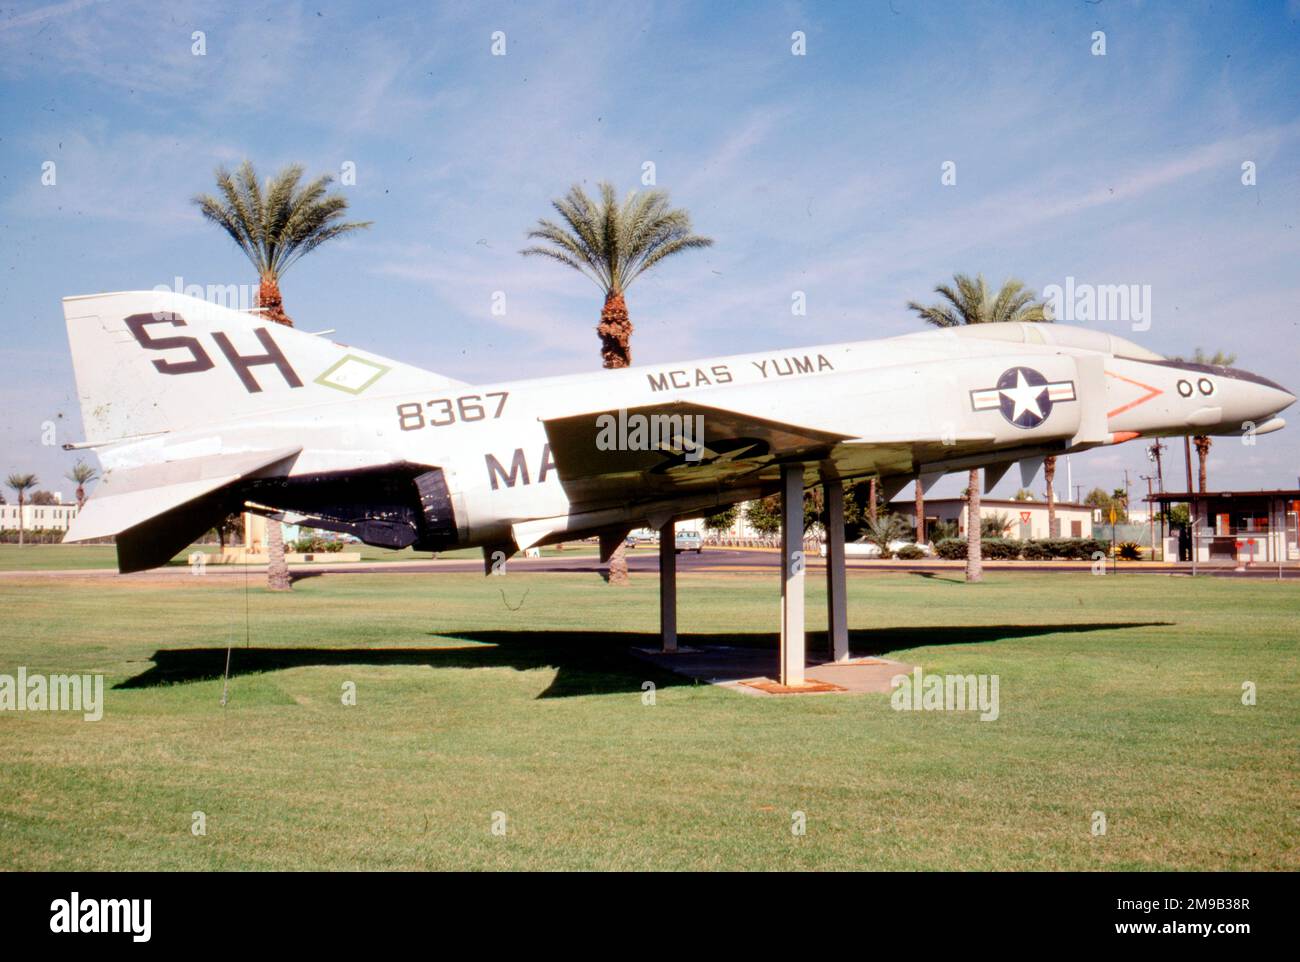 McDonnell F-4J-47-MC Phantom 158367 (msn 4153), después de ser cancelado el 19 de abril de 1972, este avión fue montado en un poste como guardián de la puerta de la Estación Aérea del Cuerpo de Marines Yuma, en Arizona. Foto de stock